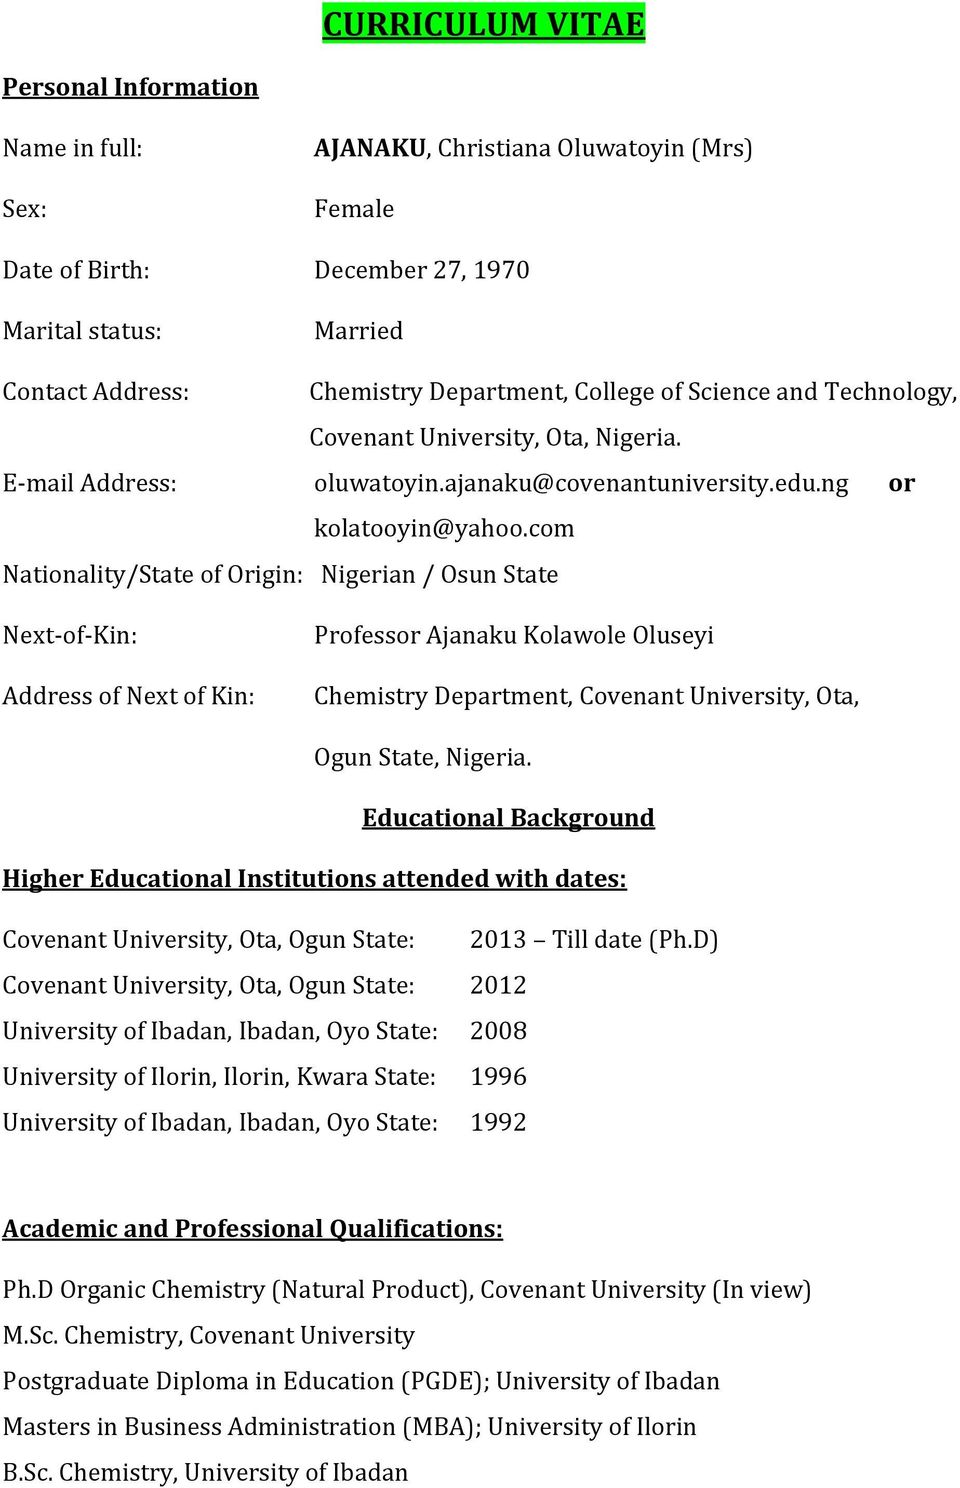 Curriculum Vitae Ogun State Nigeria Educational Background Pdf